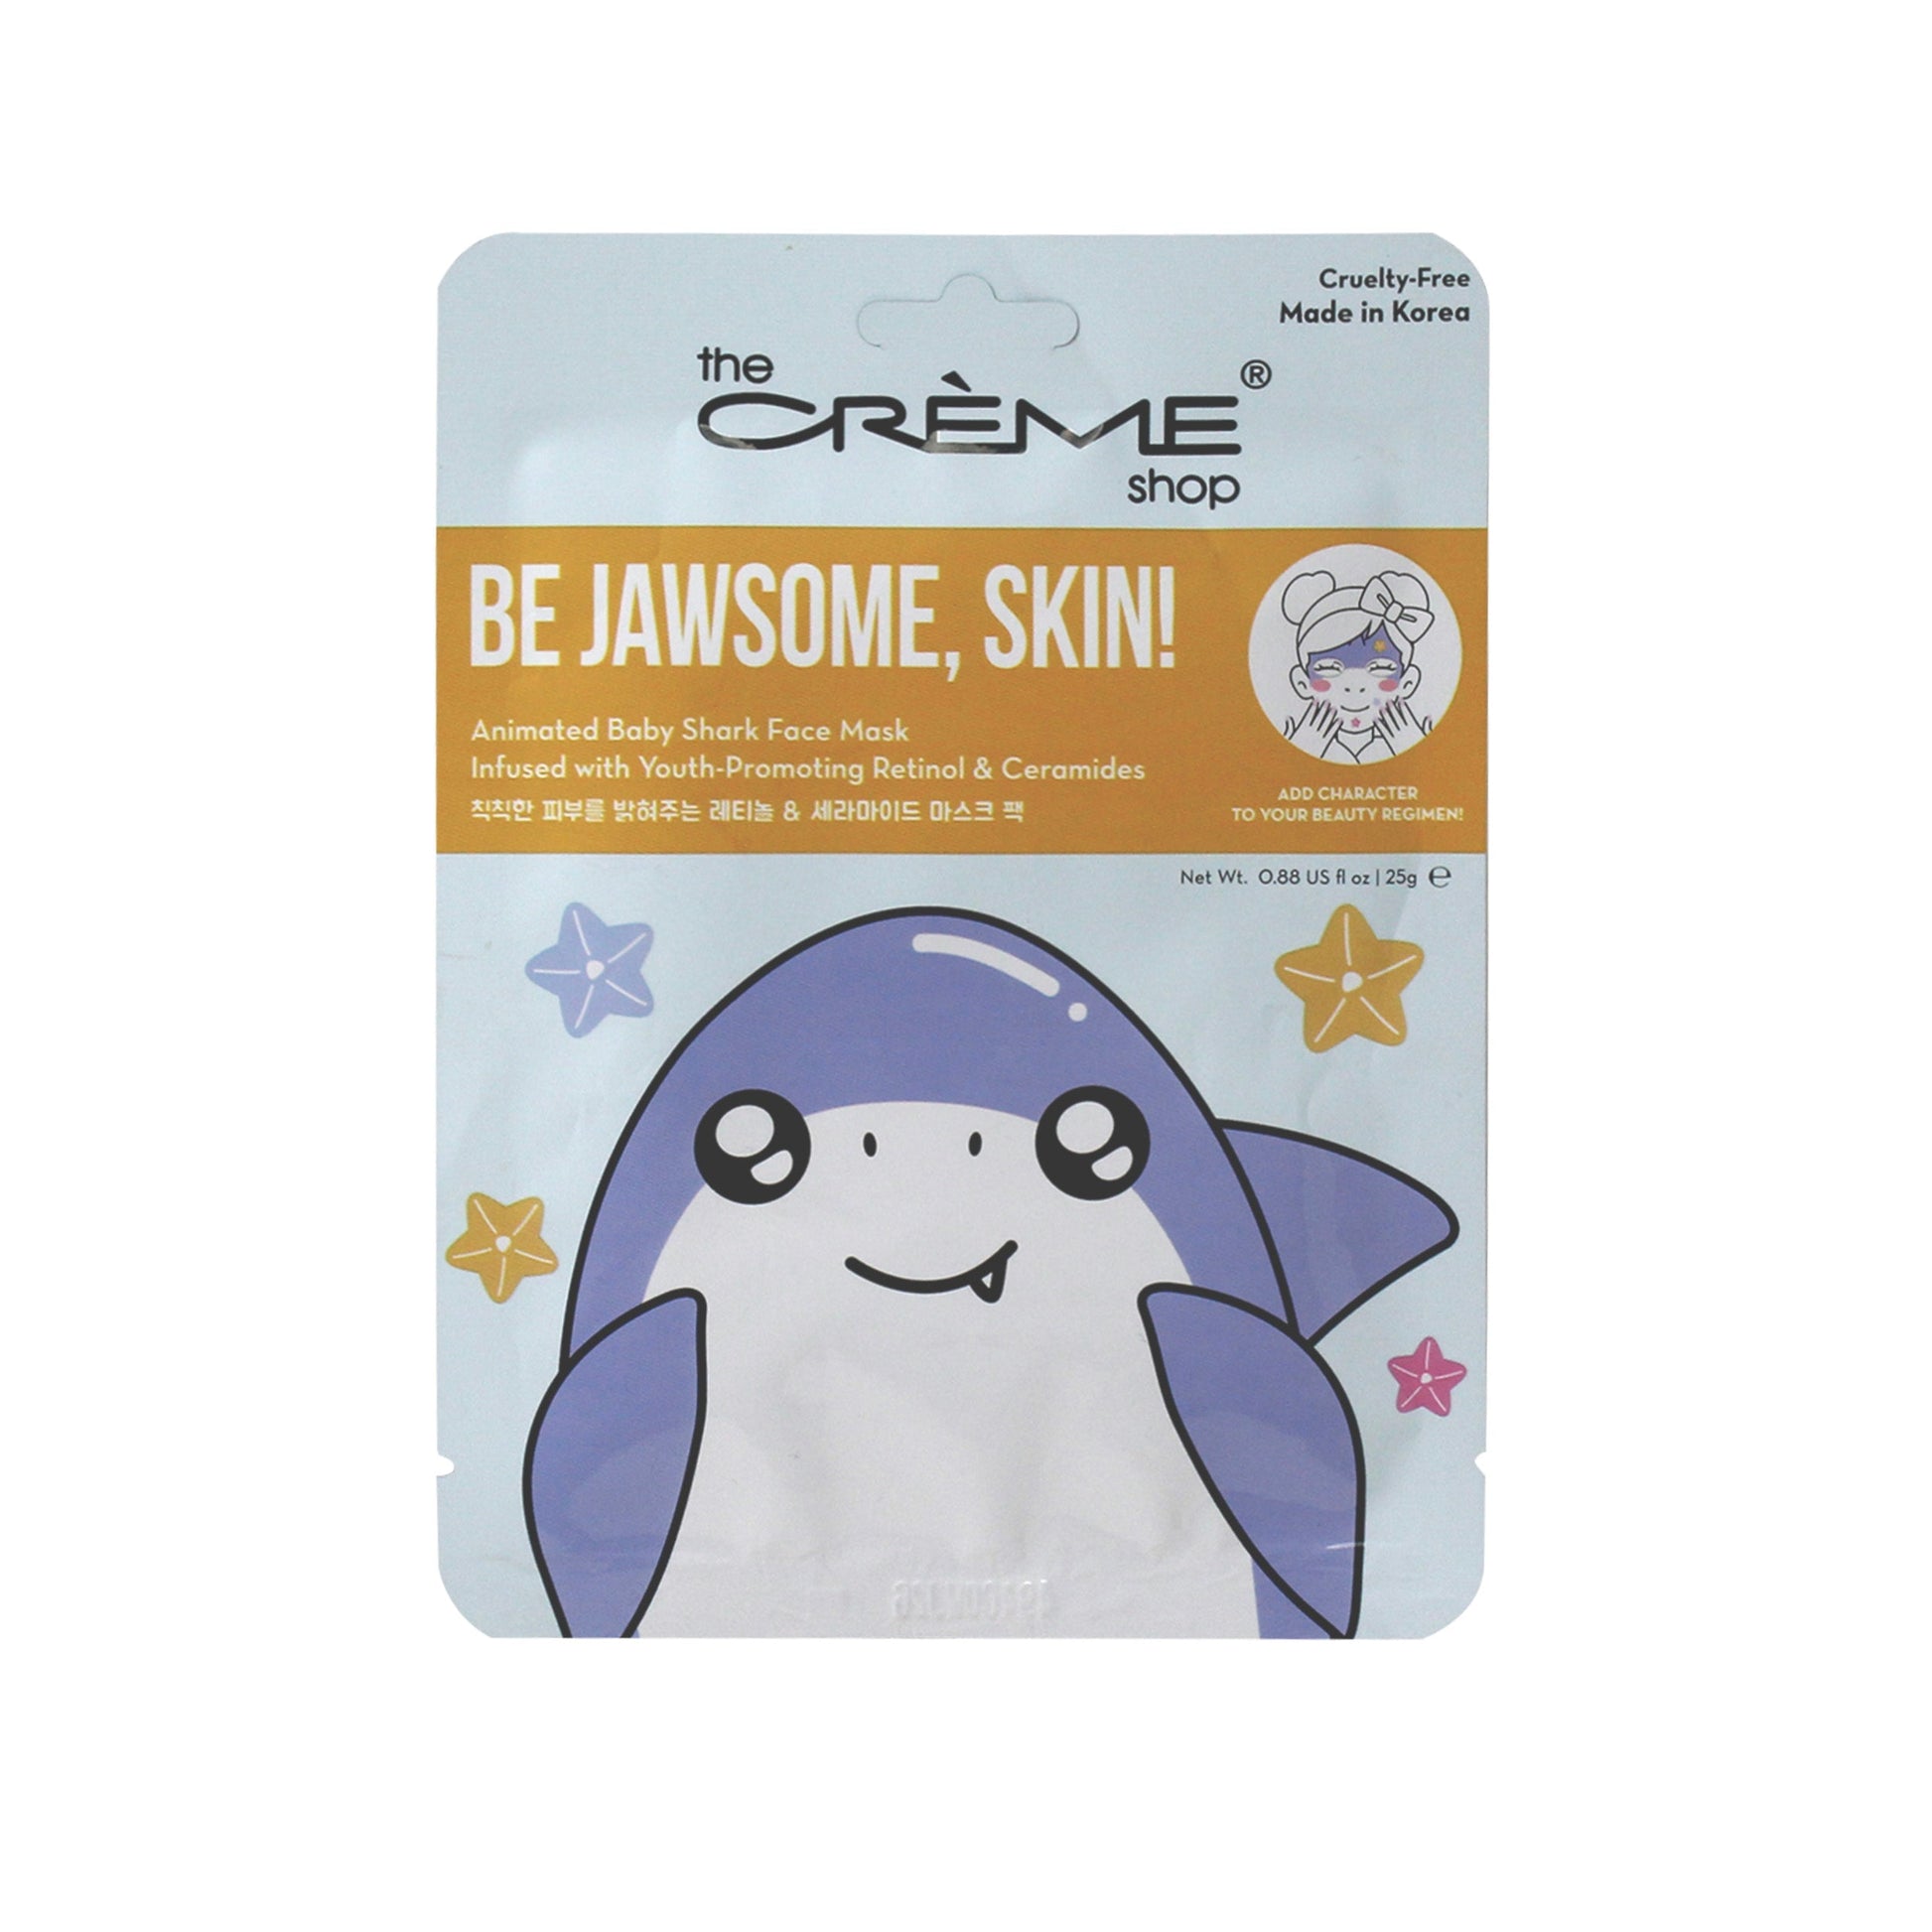 prosa Ingeniører Huddle Be Jawsome, Skin! Animated Baby Shark Face Mask | The Crème Shop